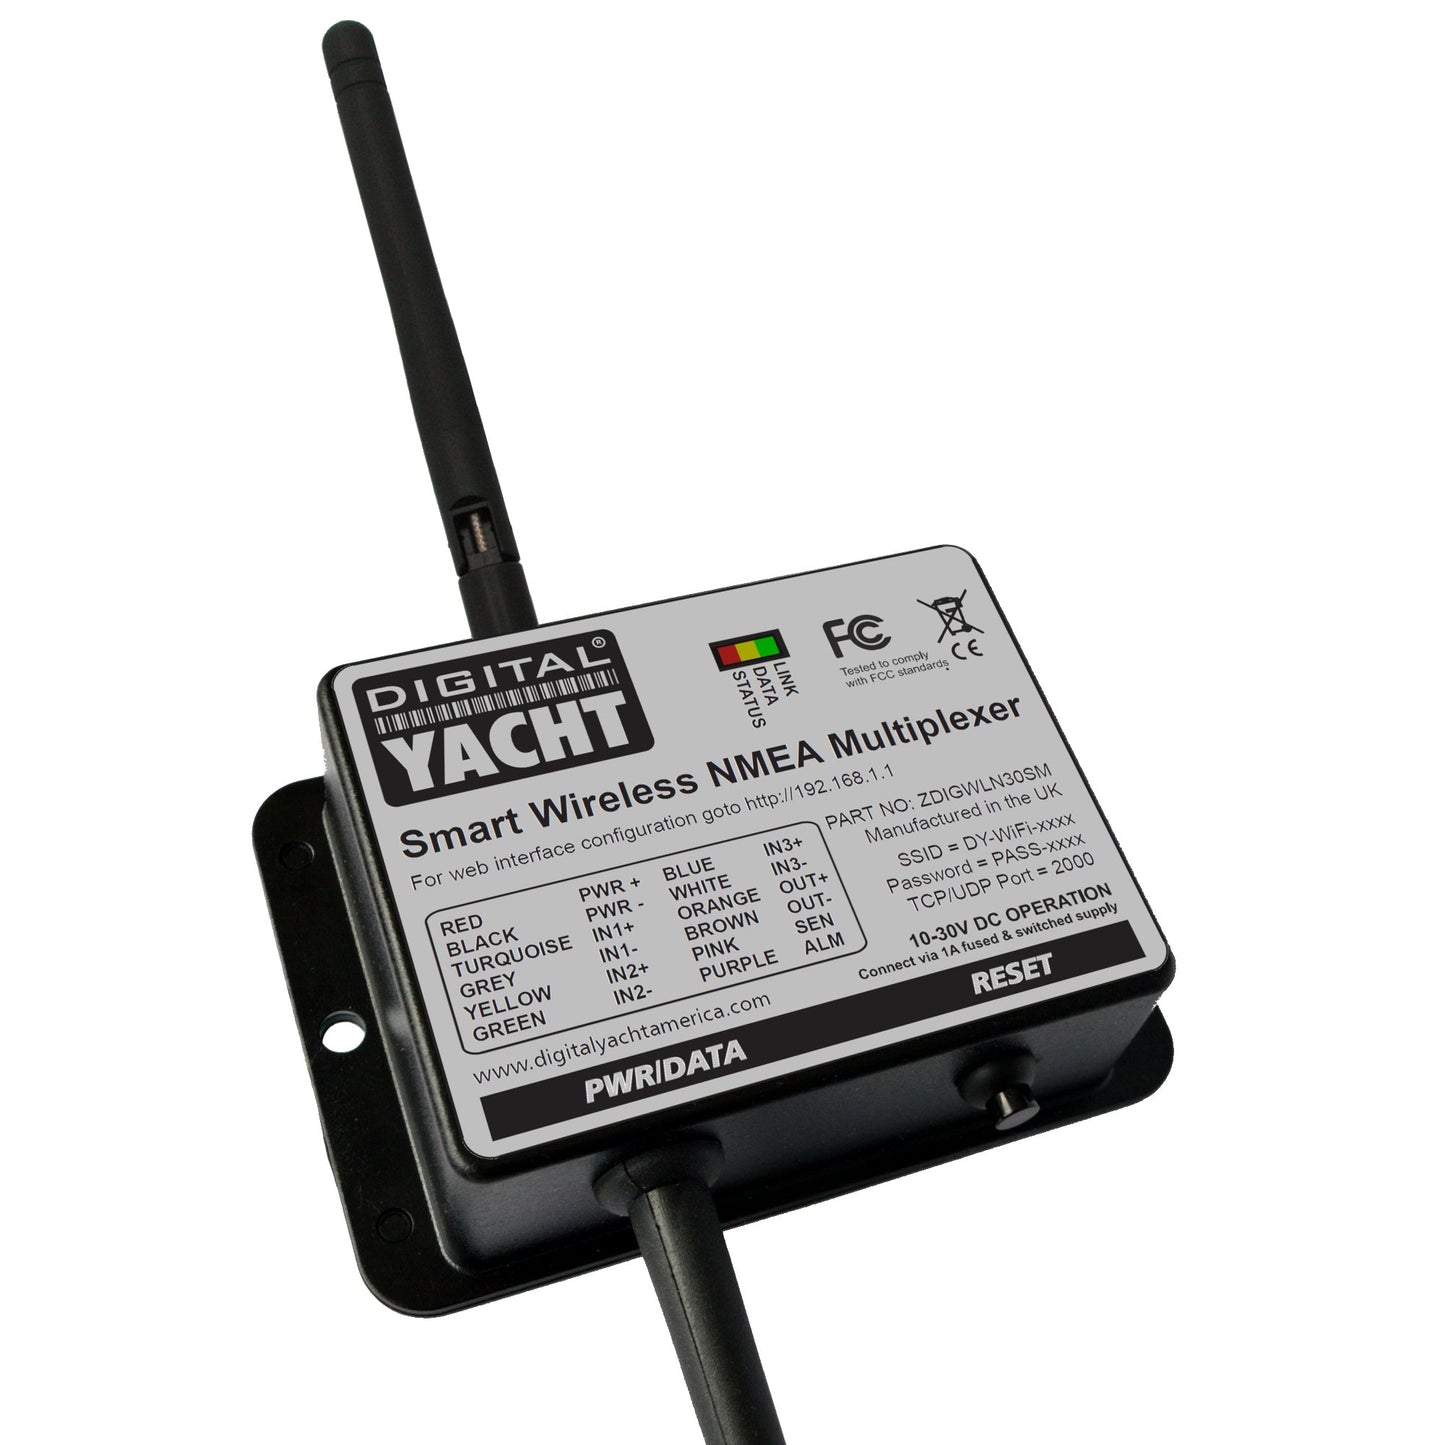 WLN30 – Smart Wireless NMEA Multiplexer